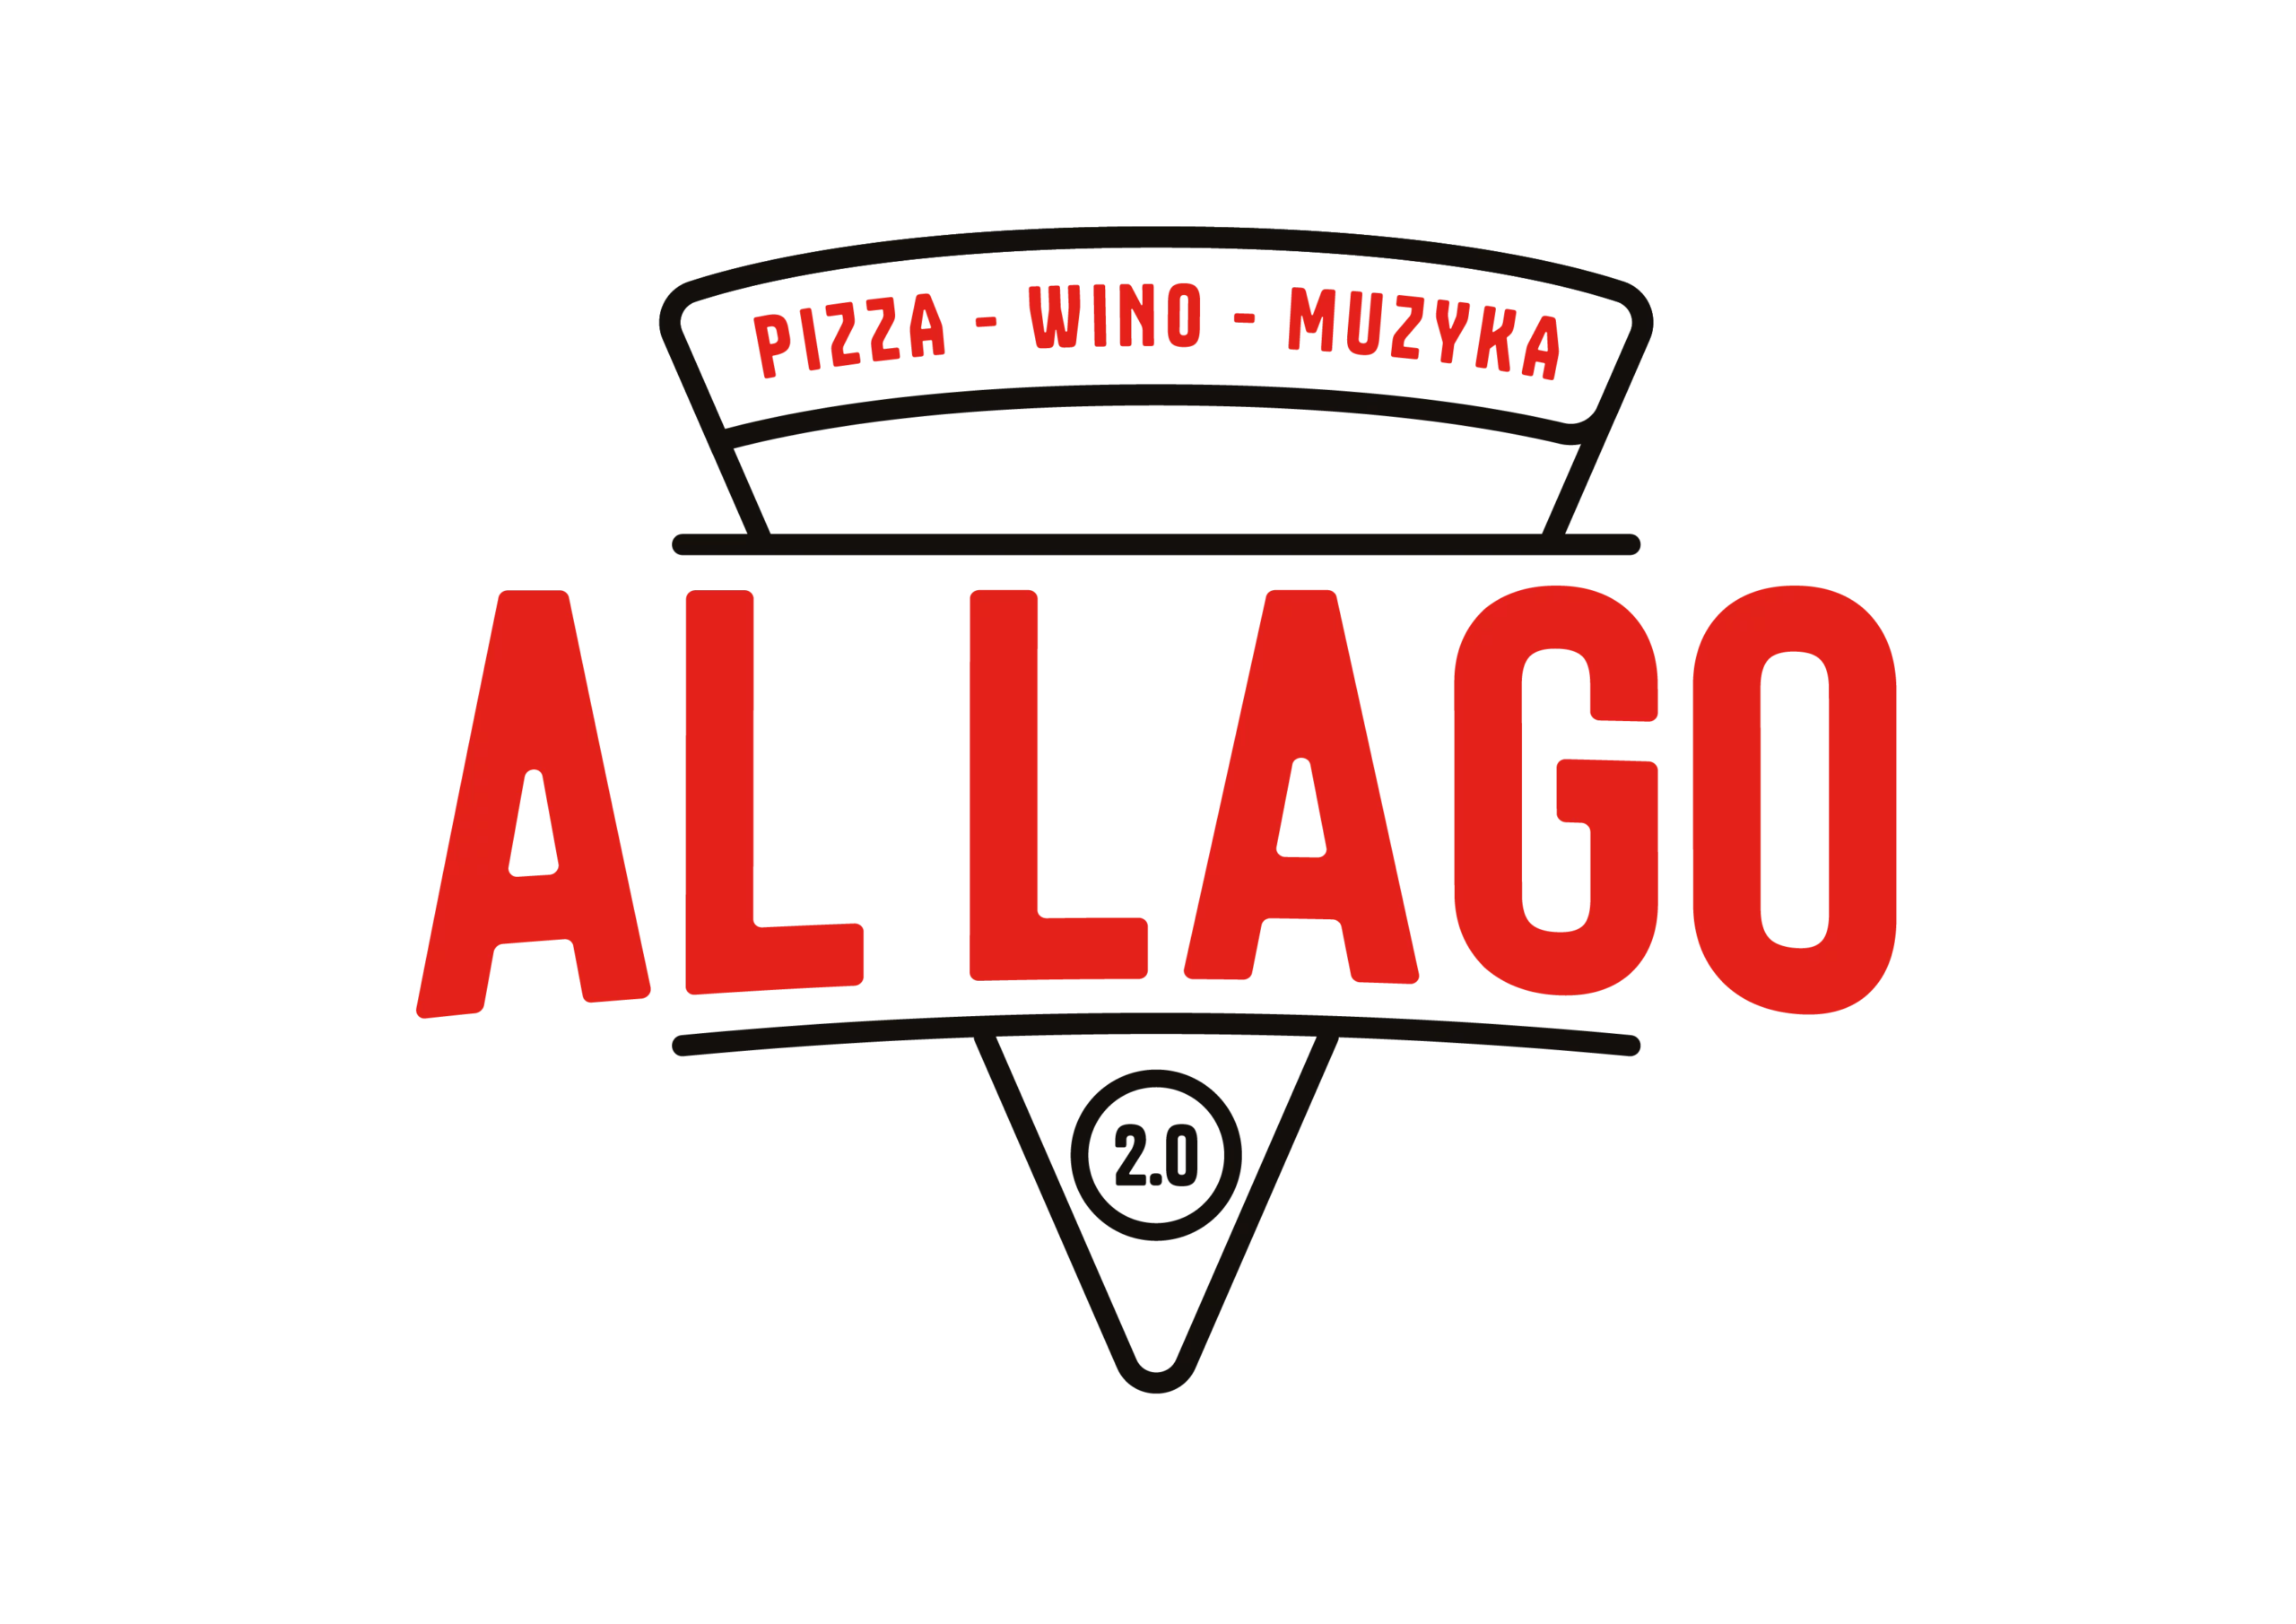 Allago Pizza-Wino-Muzyka Środa Śląska